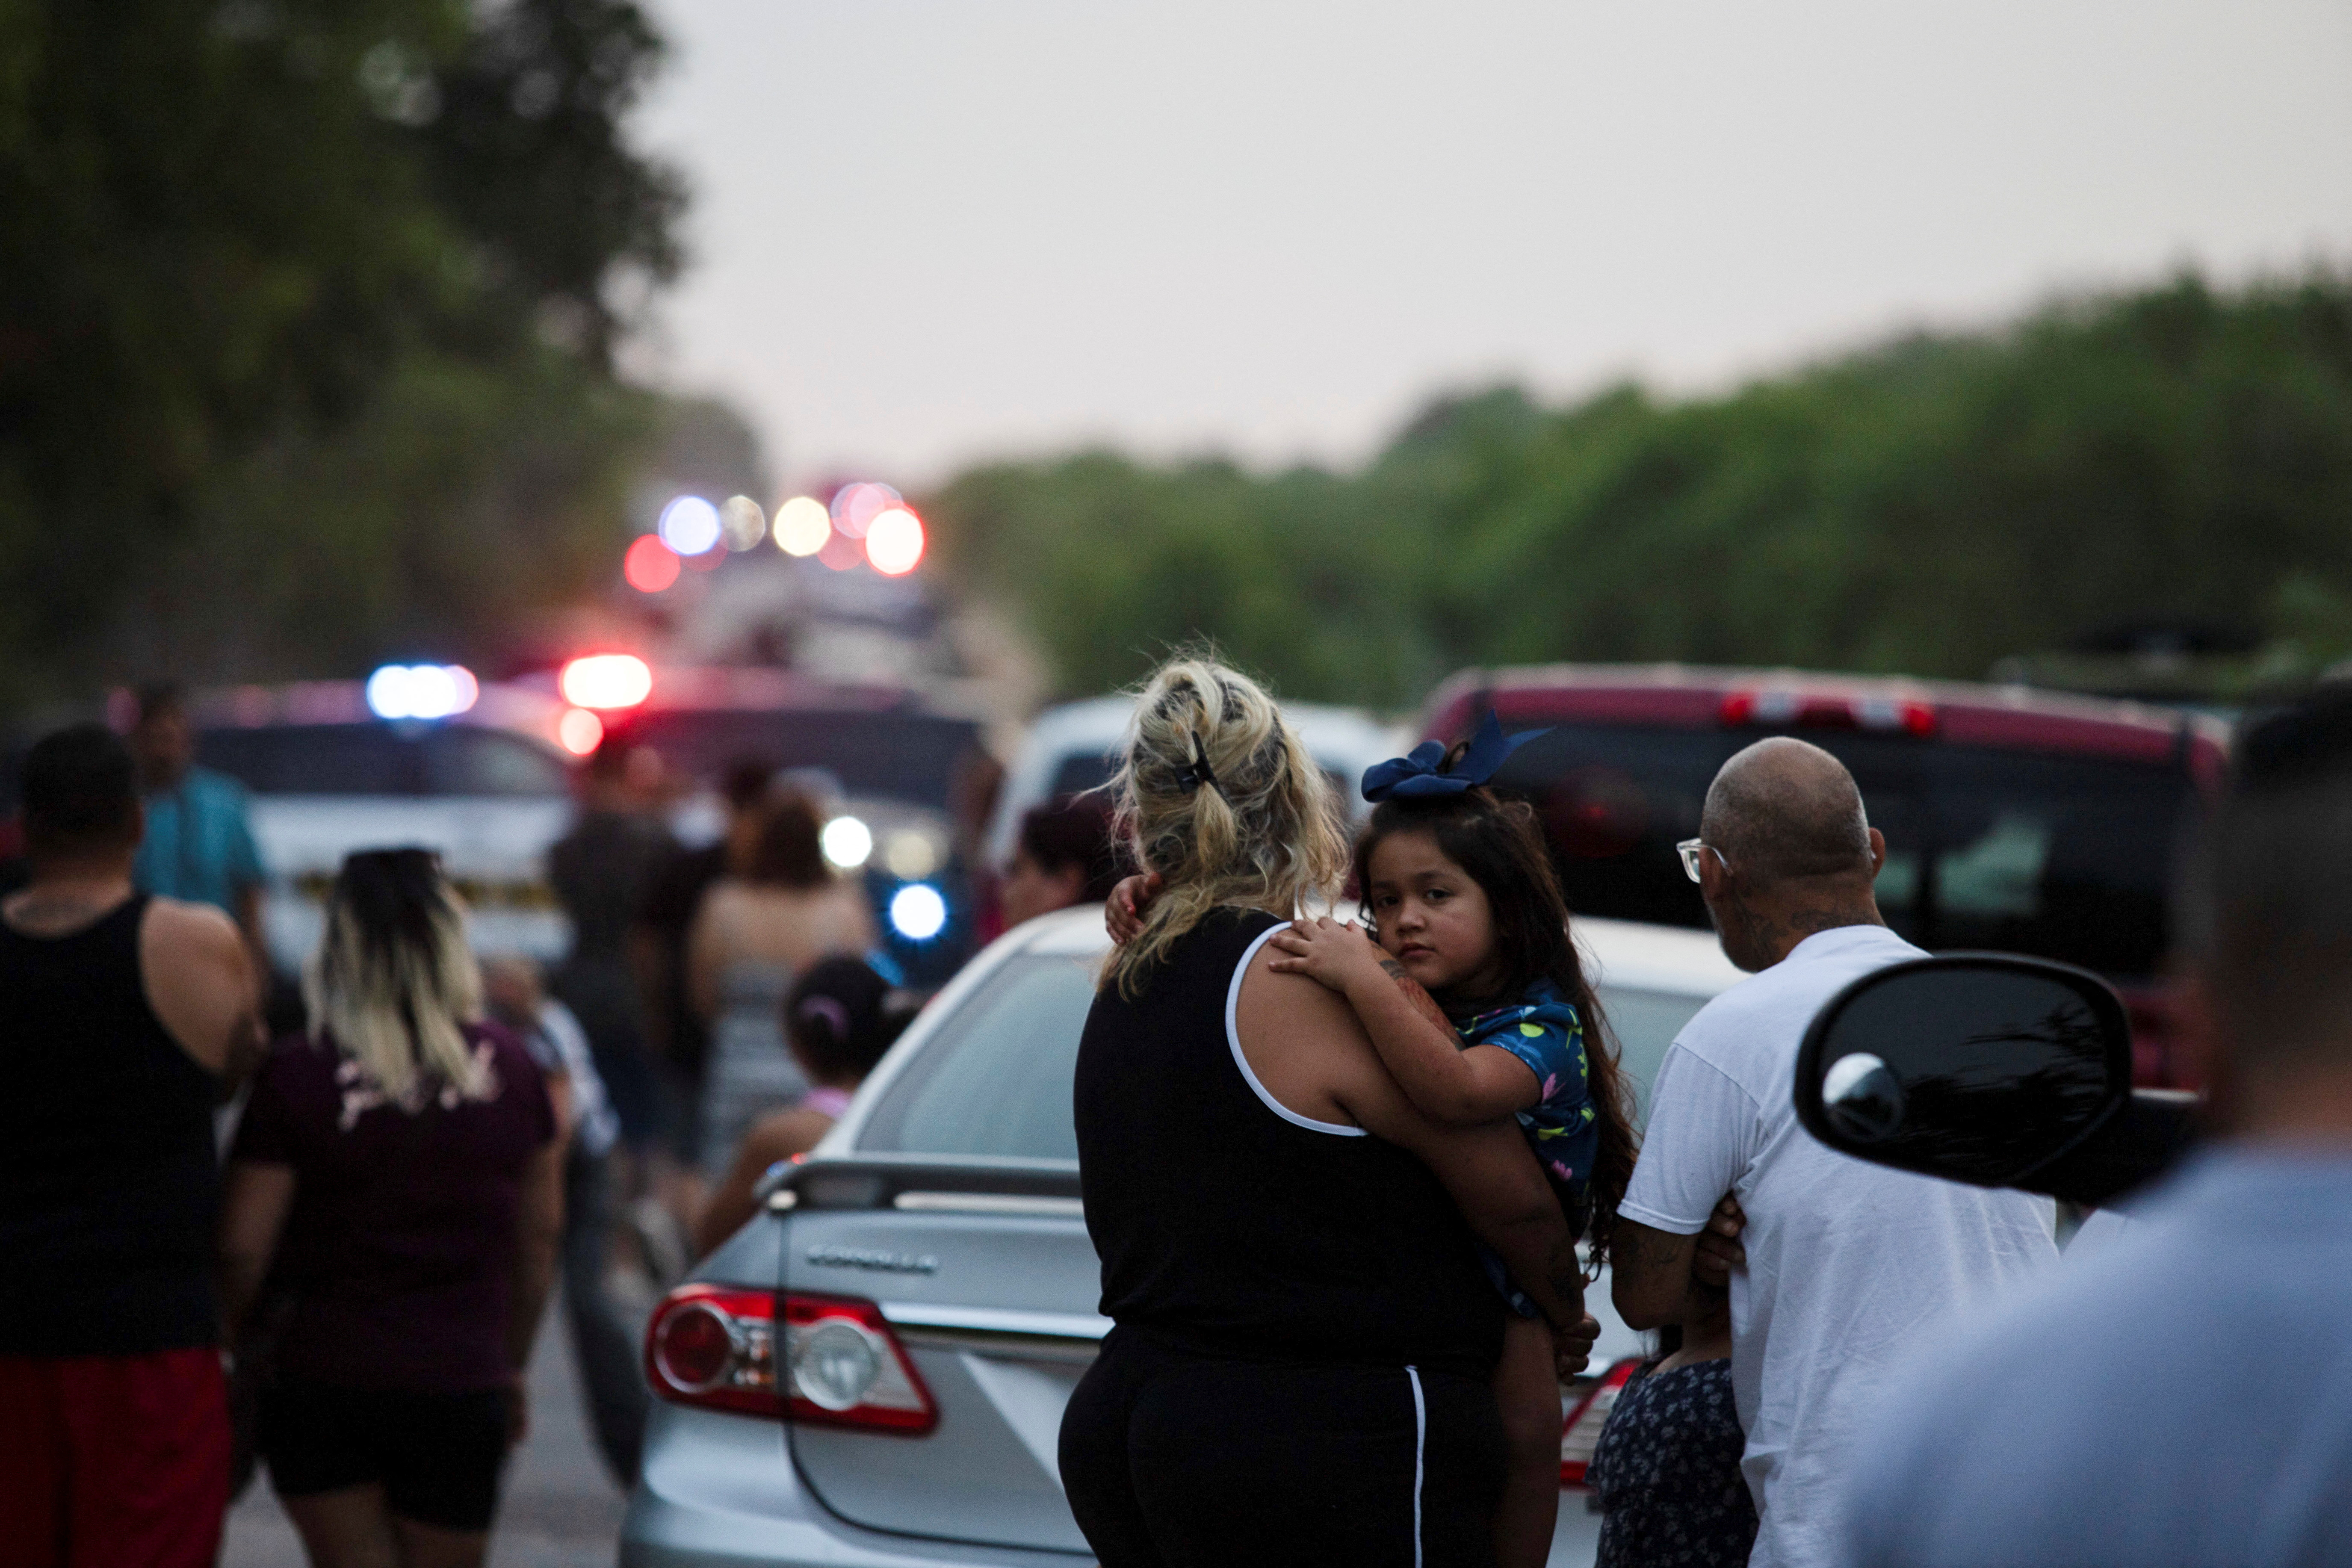 Vecinos de la comunidad observan el trabajo de las autoridades en la escena donde fue encontrado el vehículo. Foto: REUTERS/Kaylee Greenlee Beal